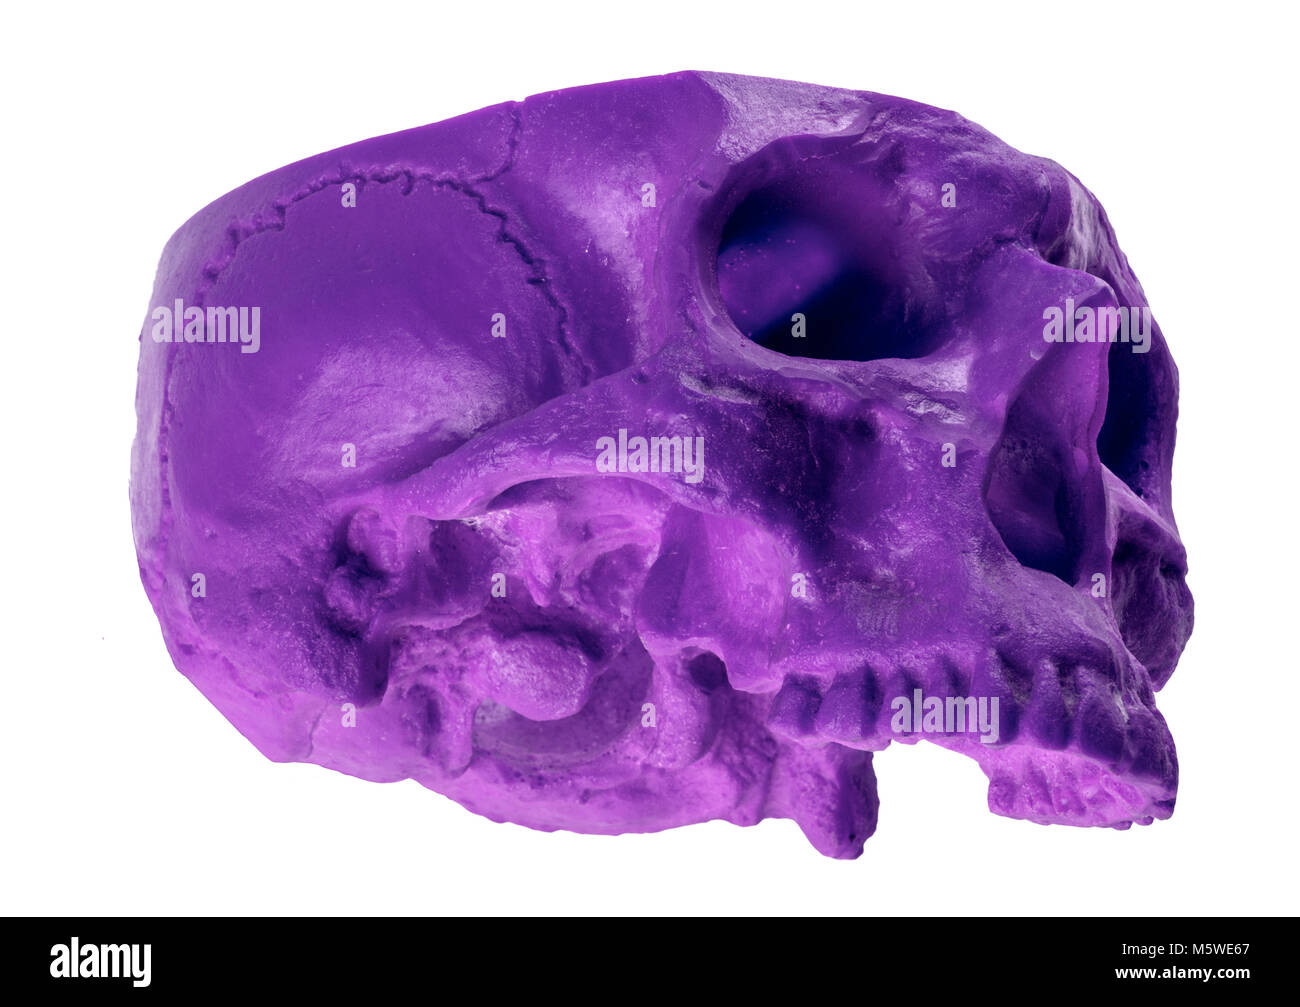 Viola cranio tritato in un insolito angolo cranio mancante Foto Stock